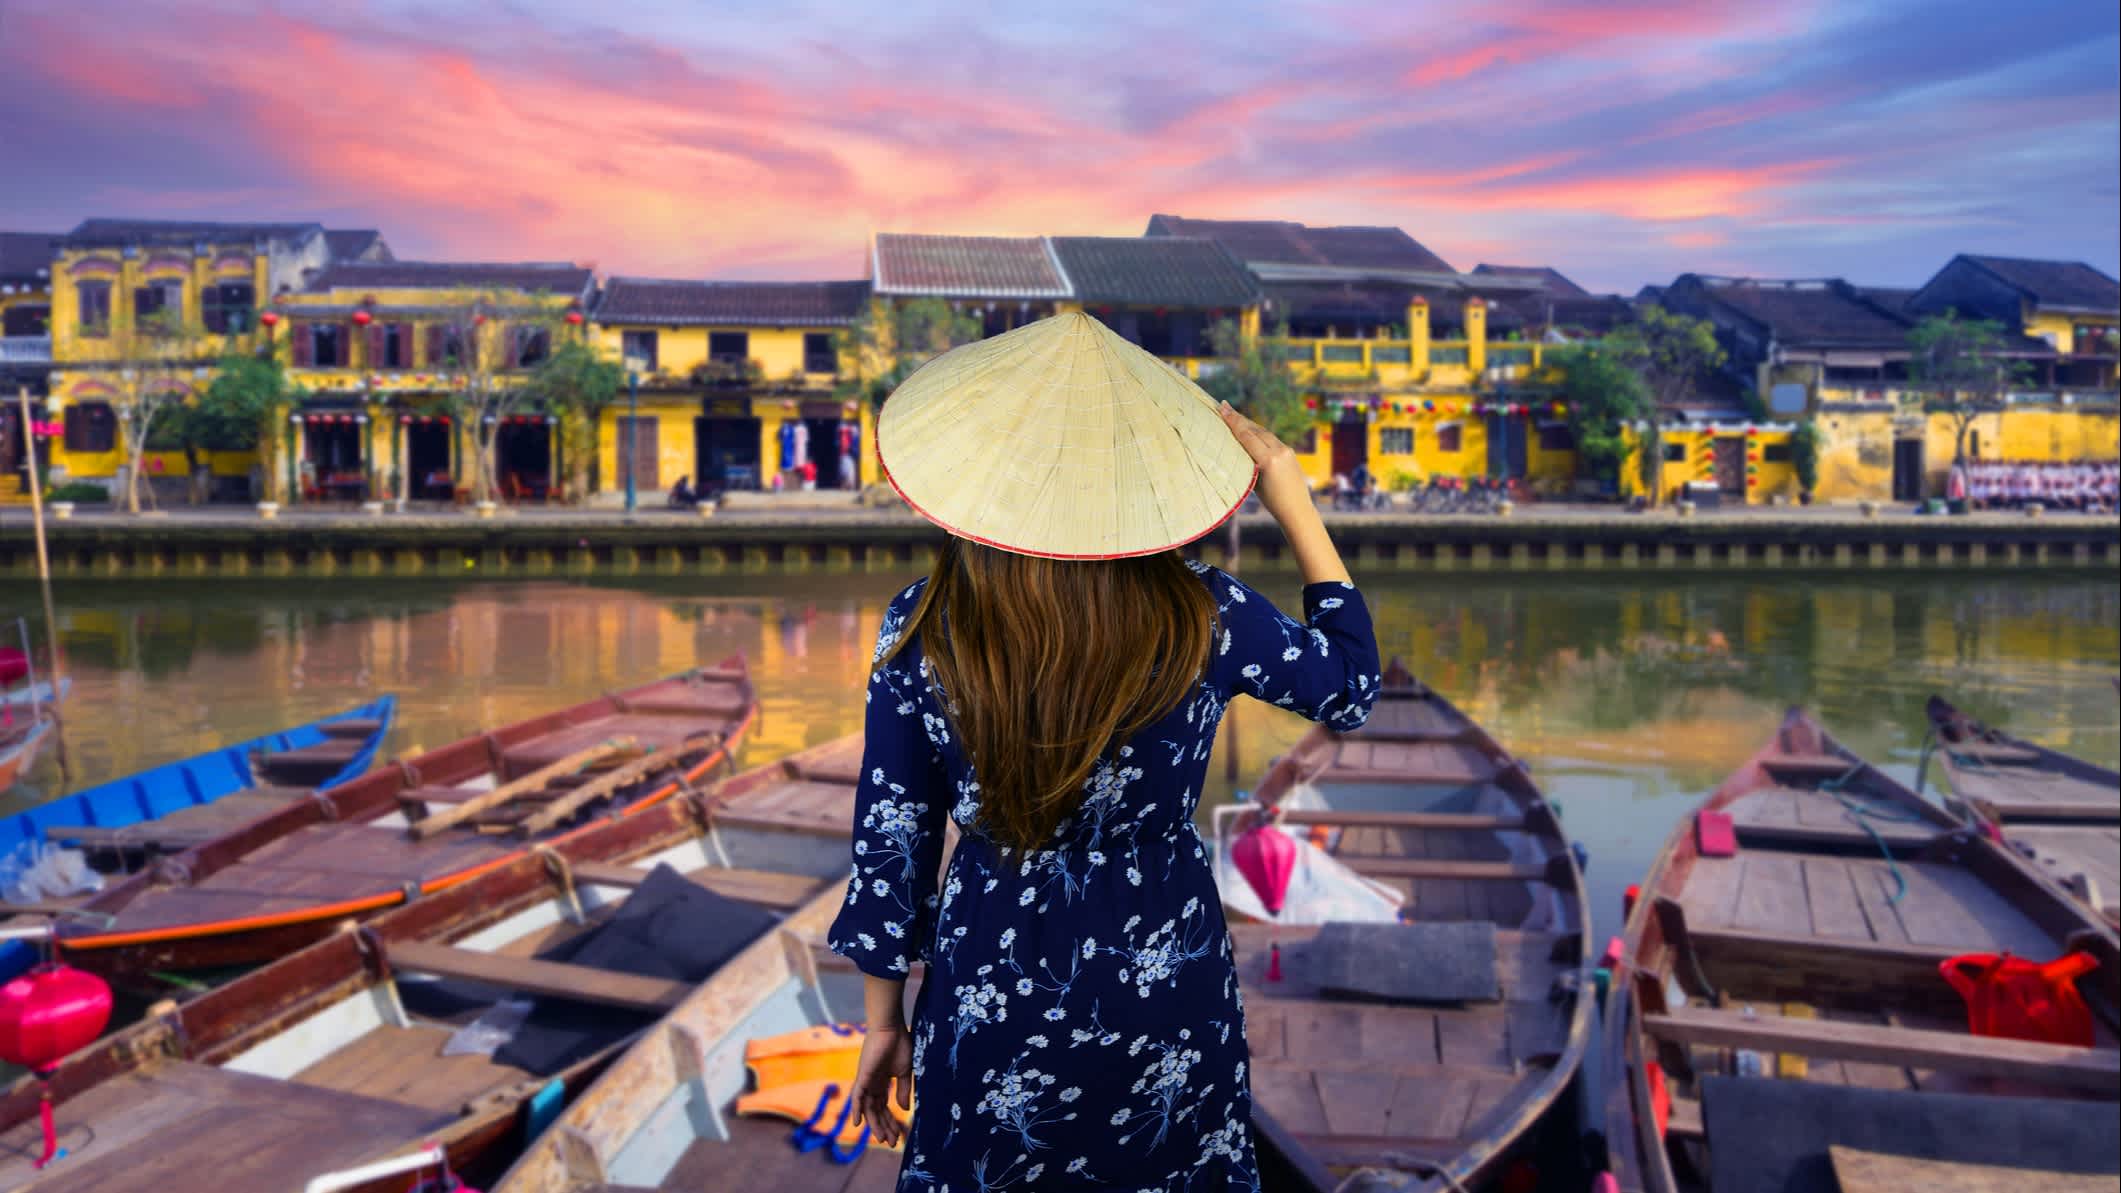 Die Touristin in der historischen Altstadt Hoi An in Vietnam.

